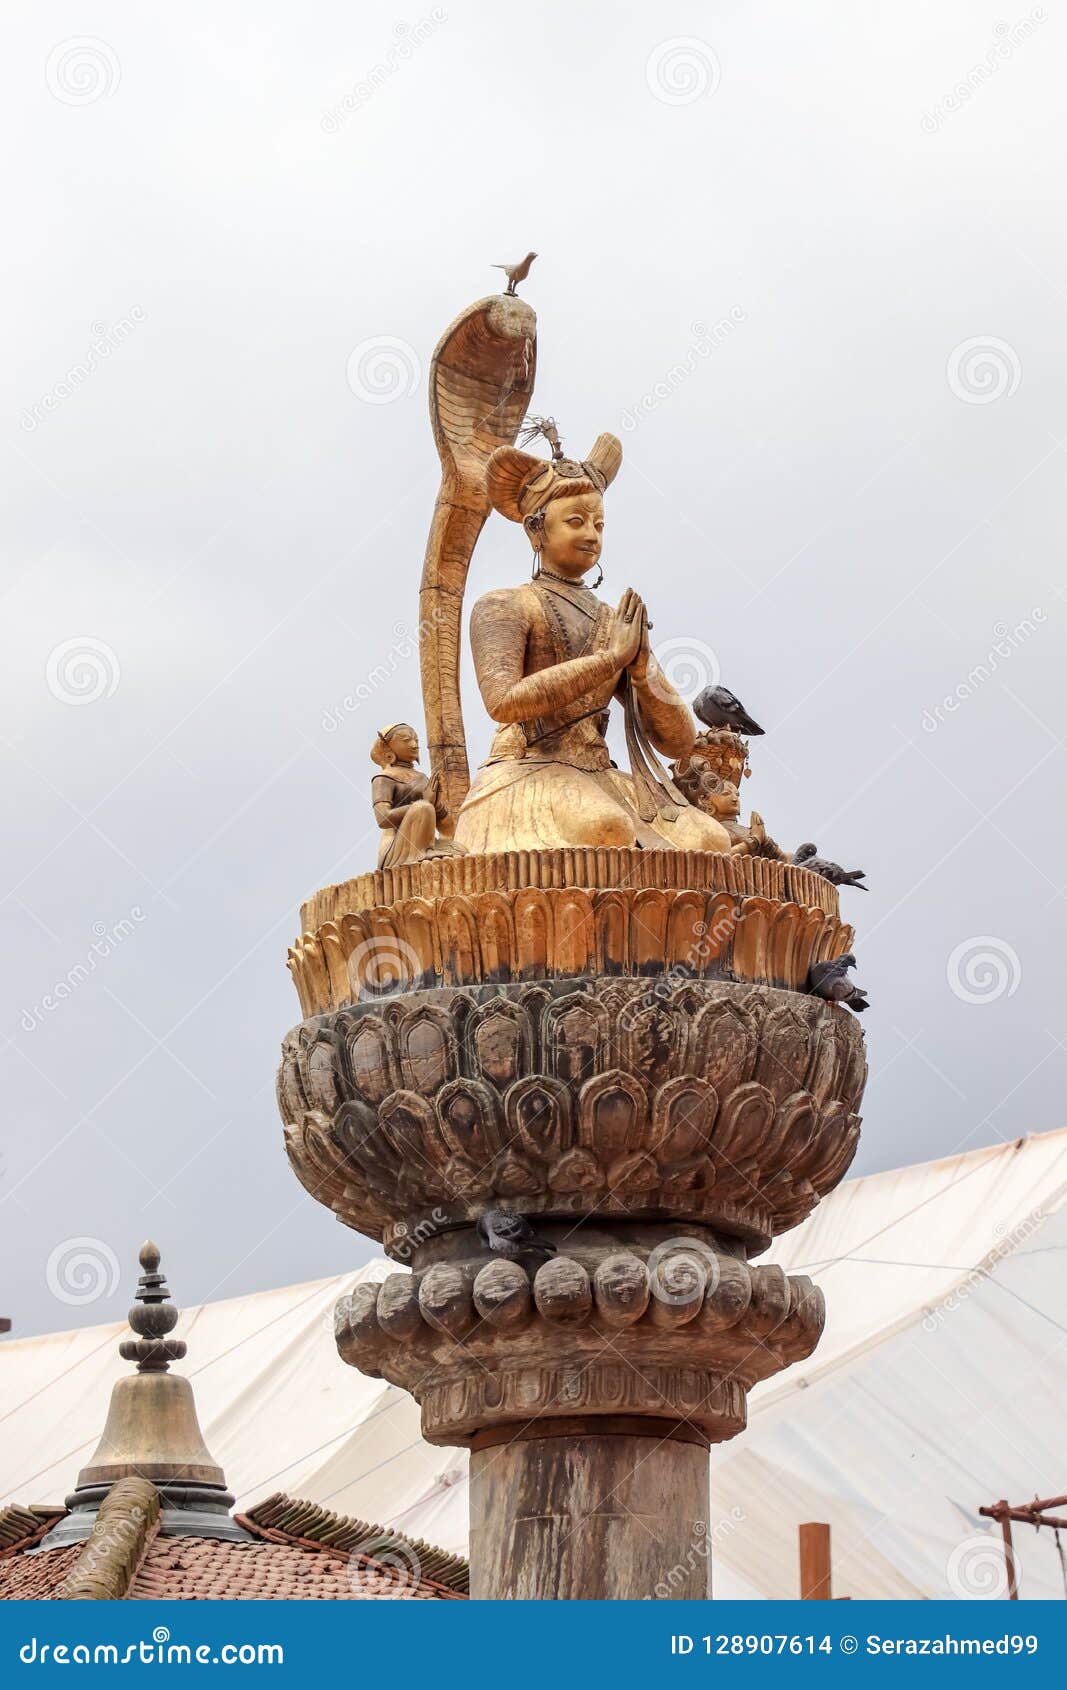 statue of king yog narendra malla at patan durbar square